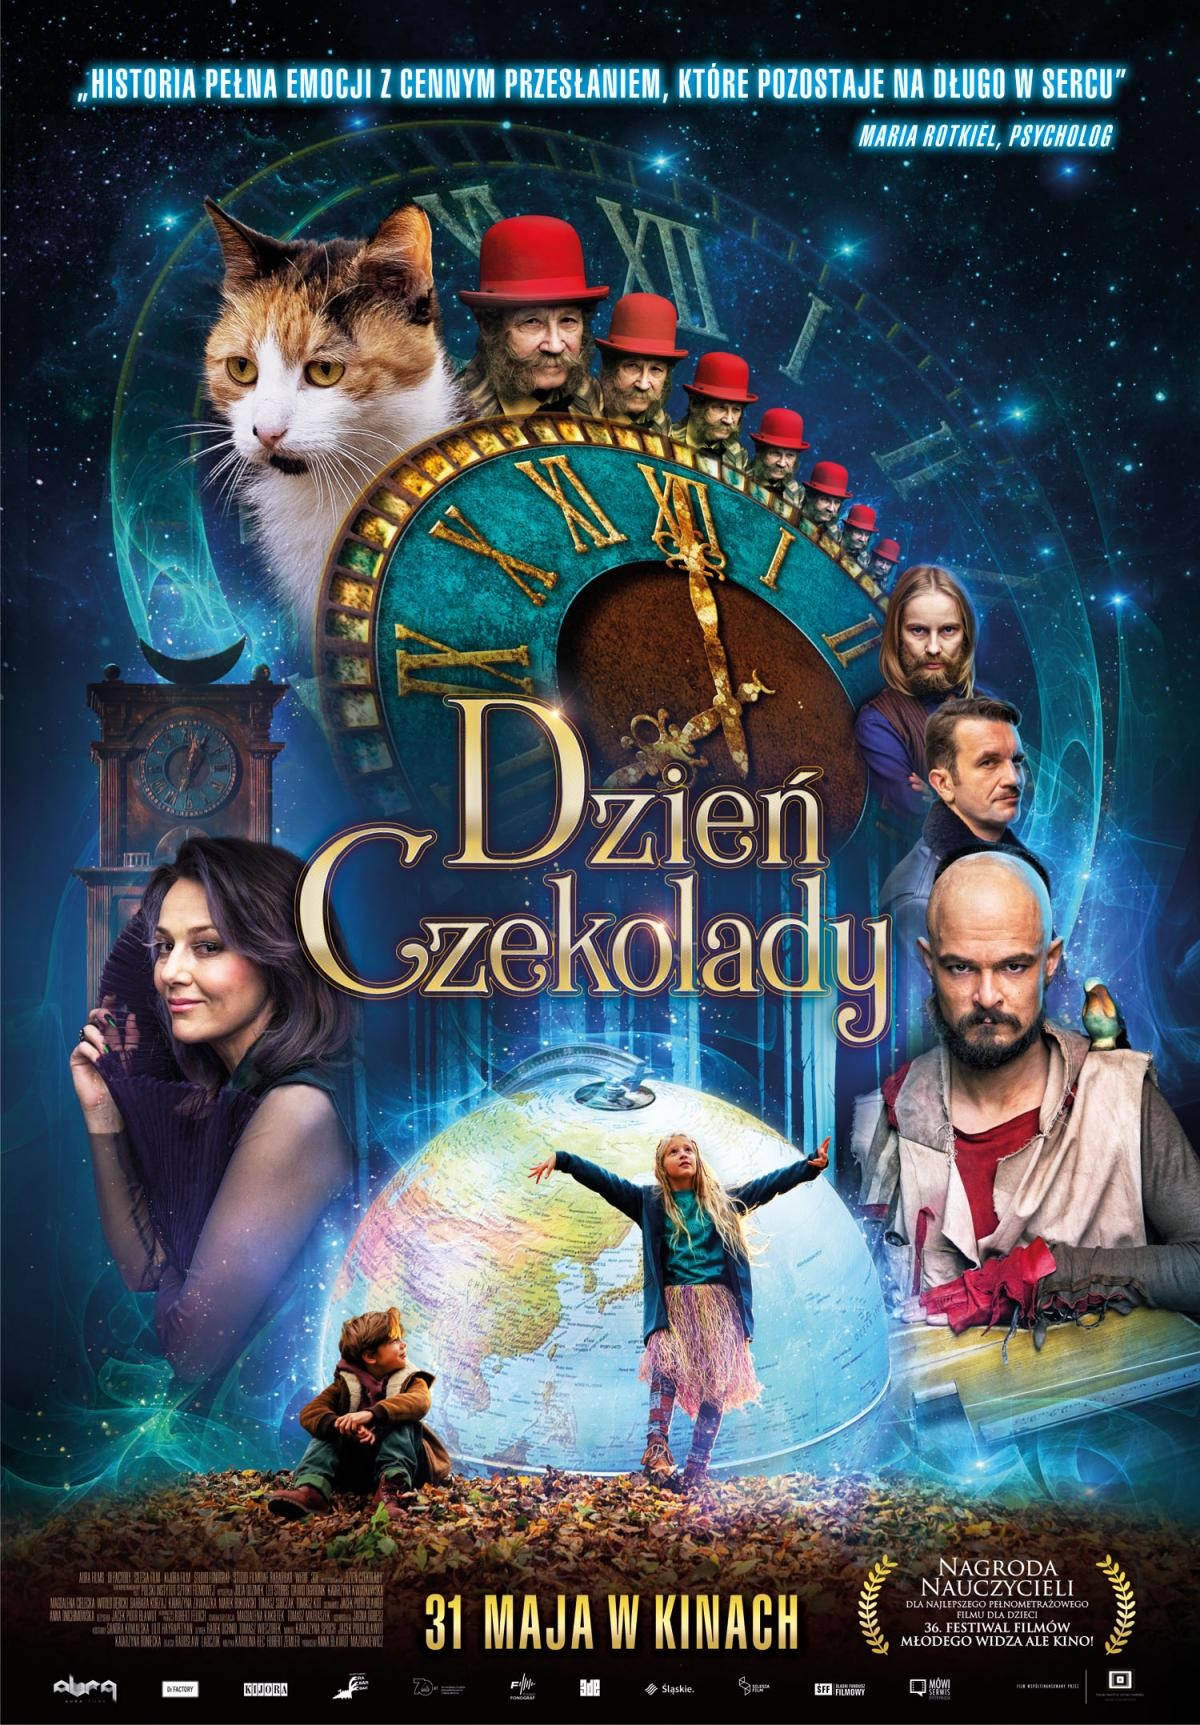 Dzien czekolady (2018) постер